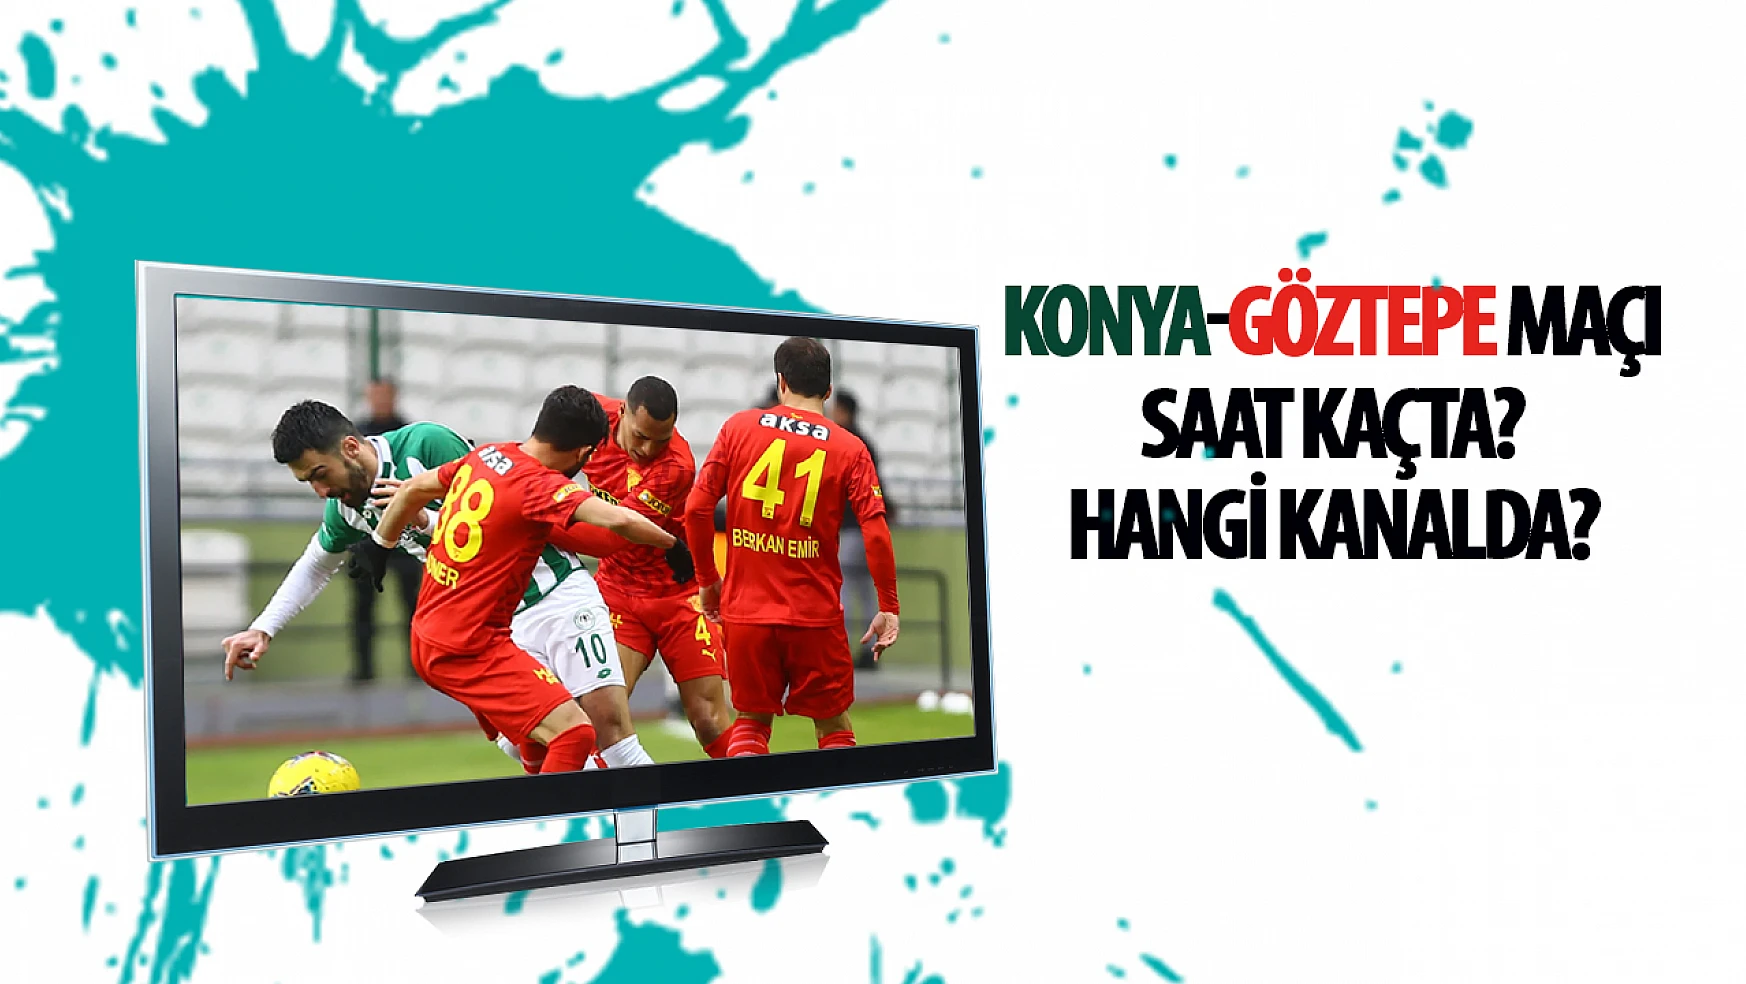 Konyaspor- Göztepe maçı saat kaçta ve hangi kanalda? İşte detaylar…